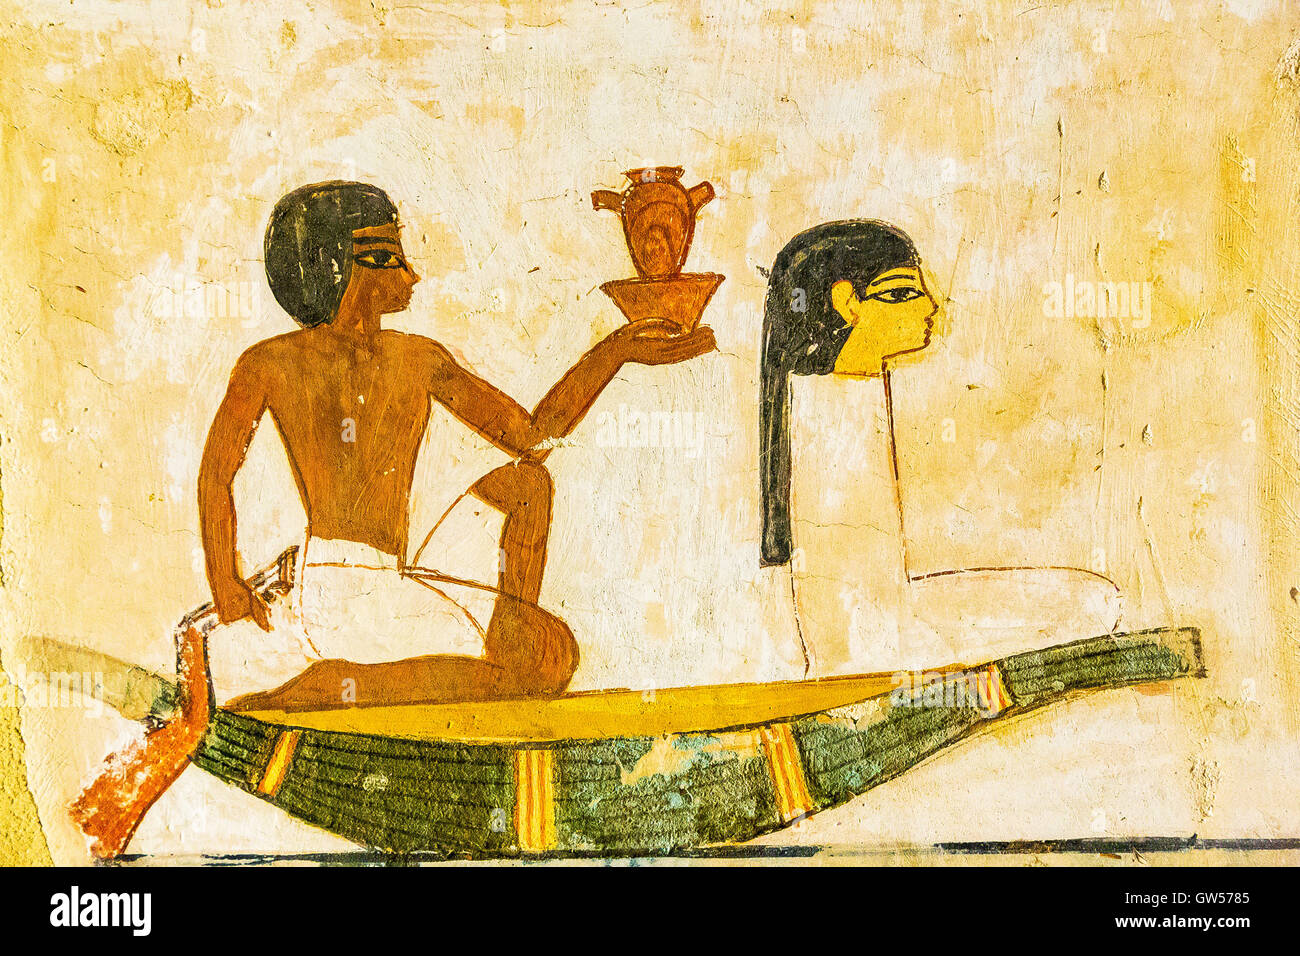 Patrimonio Mundial de la UNESCO, de Tebas en Egipto, El Valle de los Nobles, tumba de Menna. Navegación simbólico. Foto de stock